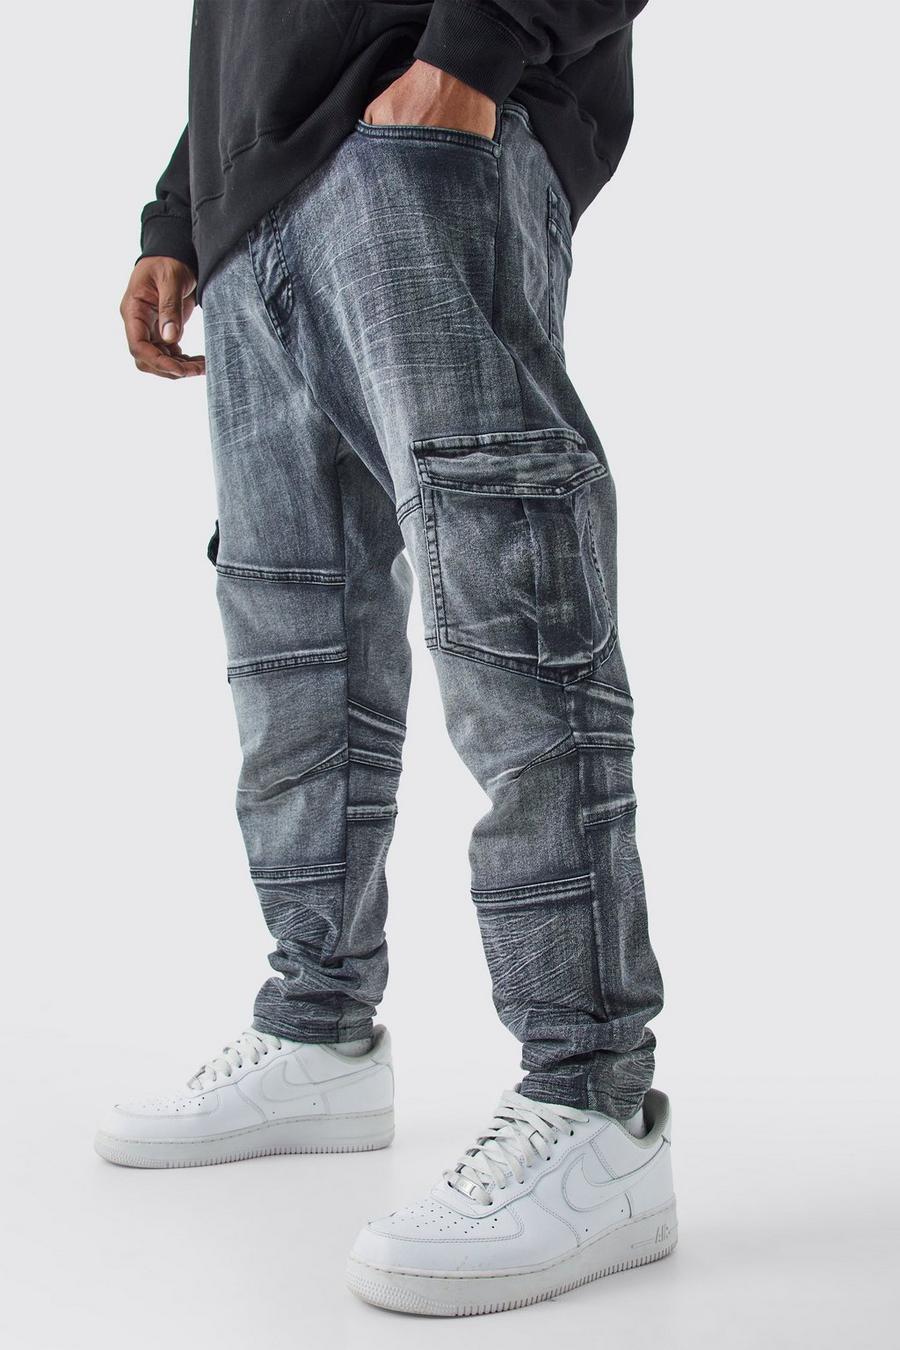 Jeans stile Biker Plus Size Skinny Fit in lavaggio candeggiato, Washed black